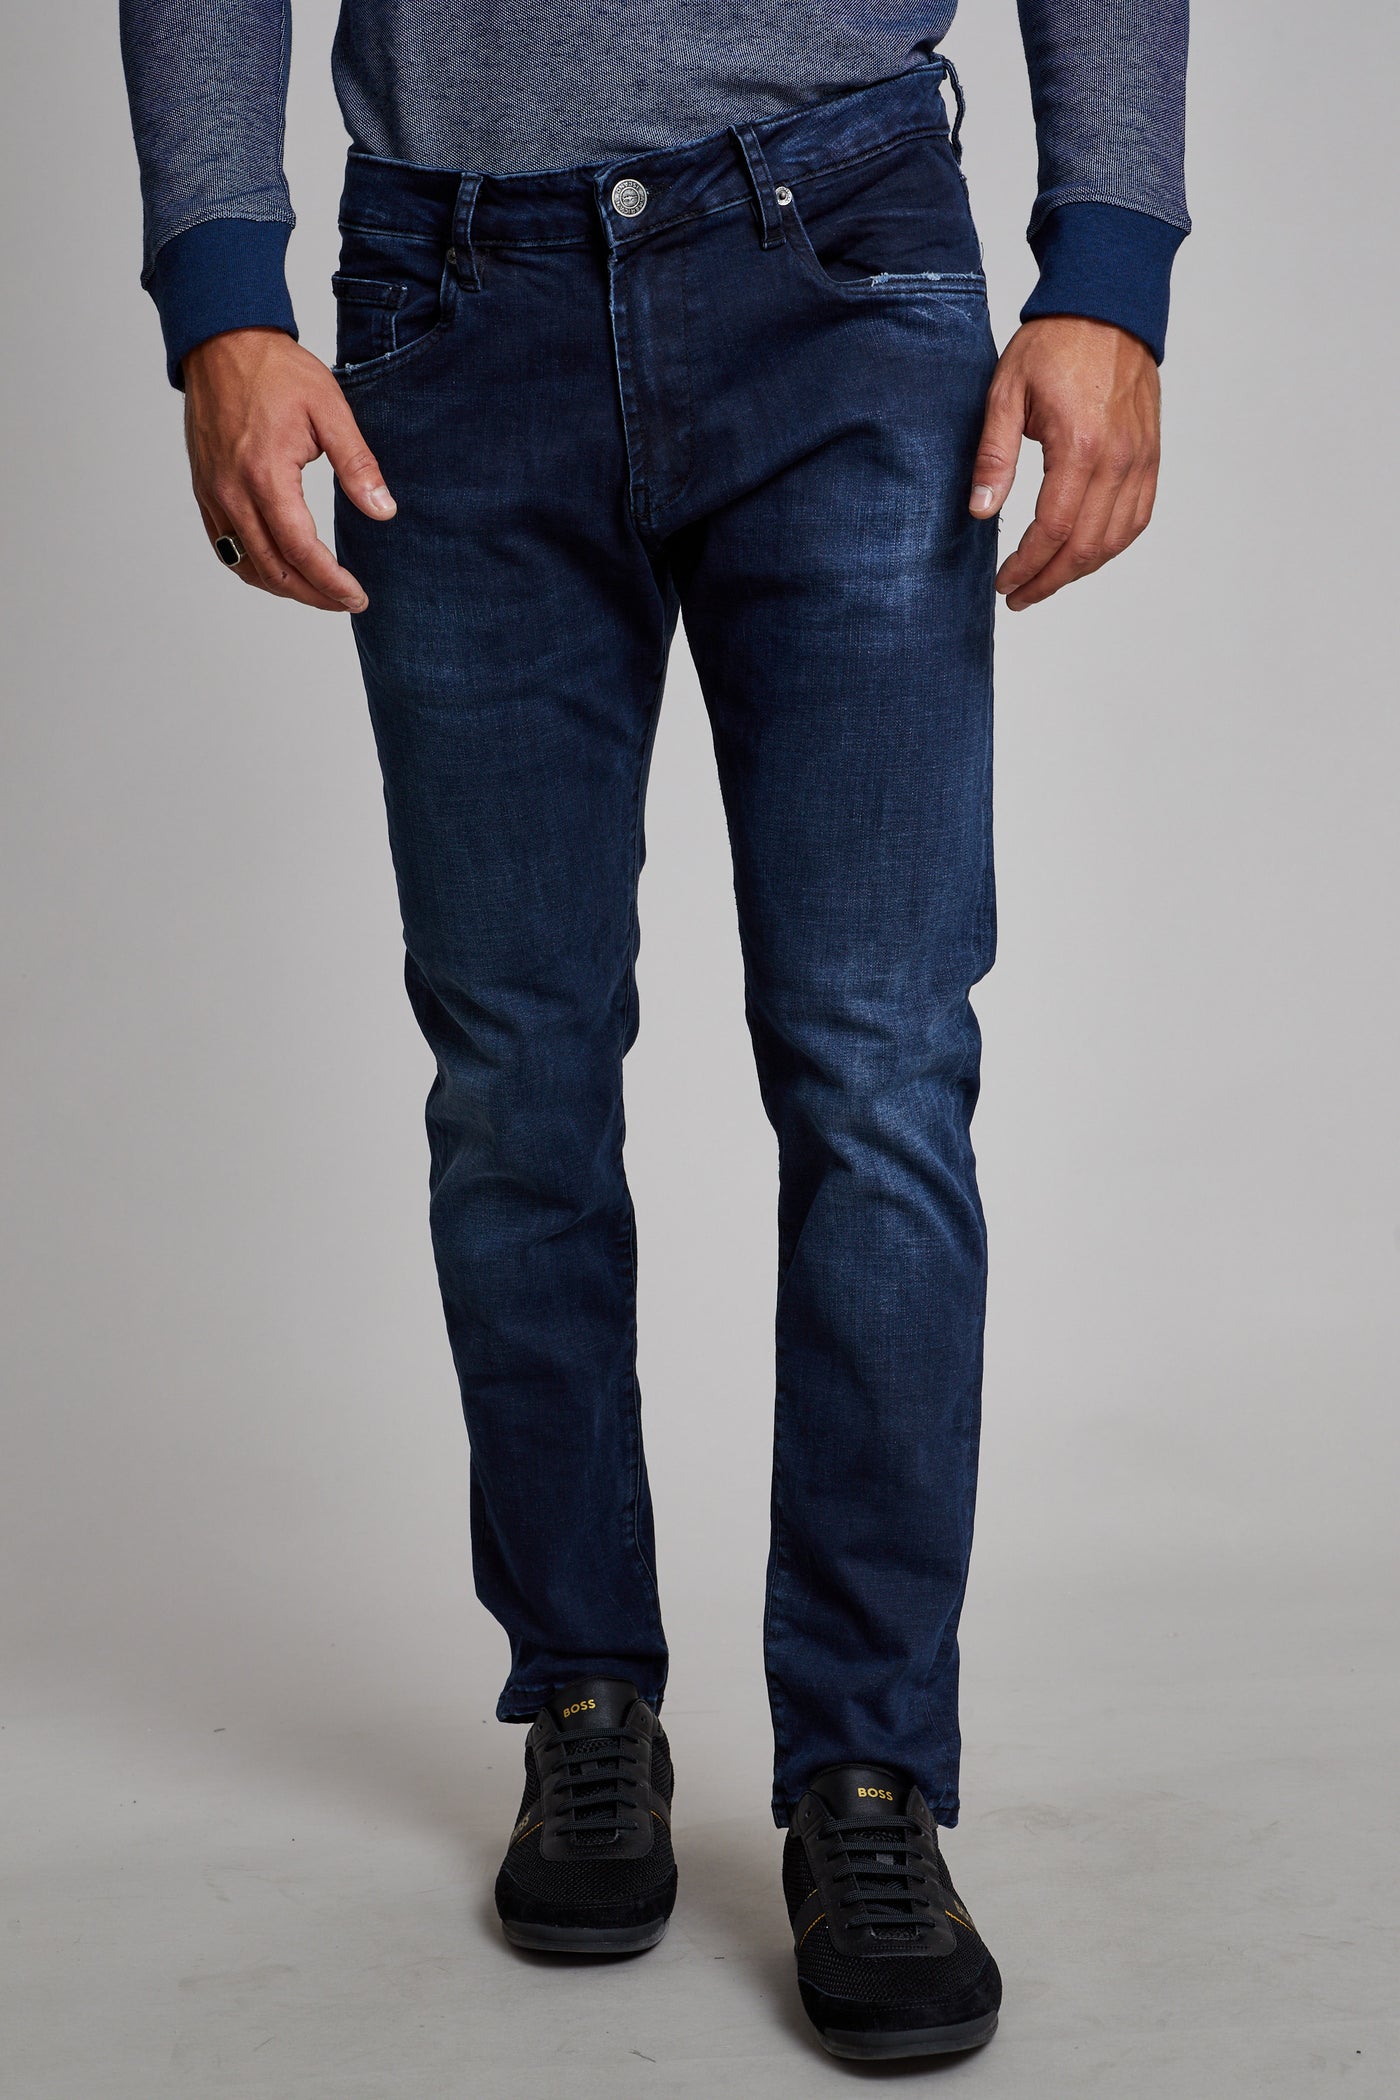 מכנס ג'ינס סלים TU בצבע כחול 1